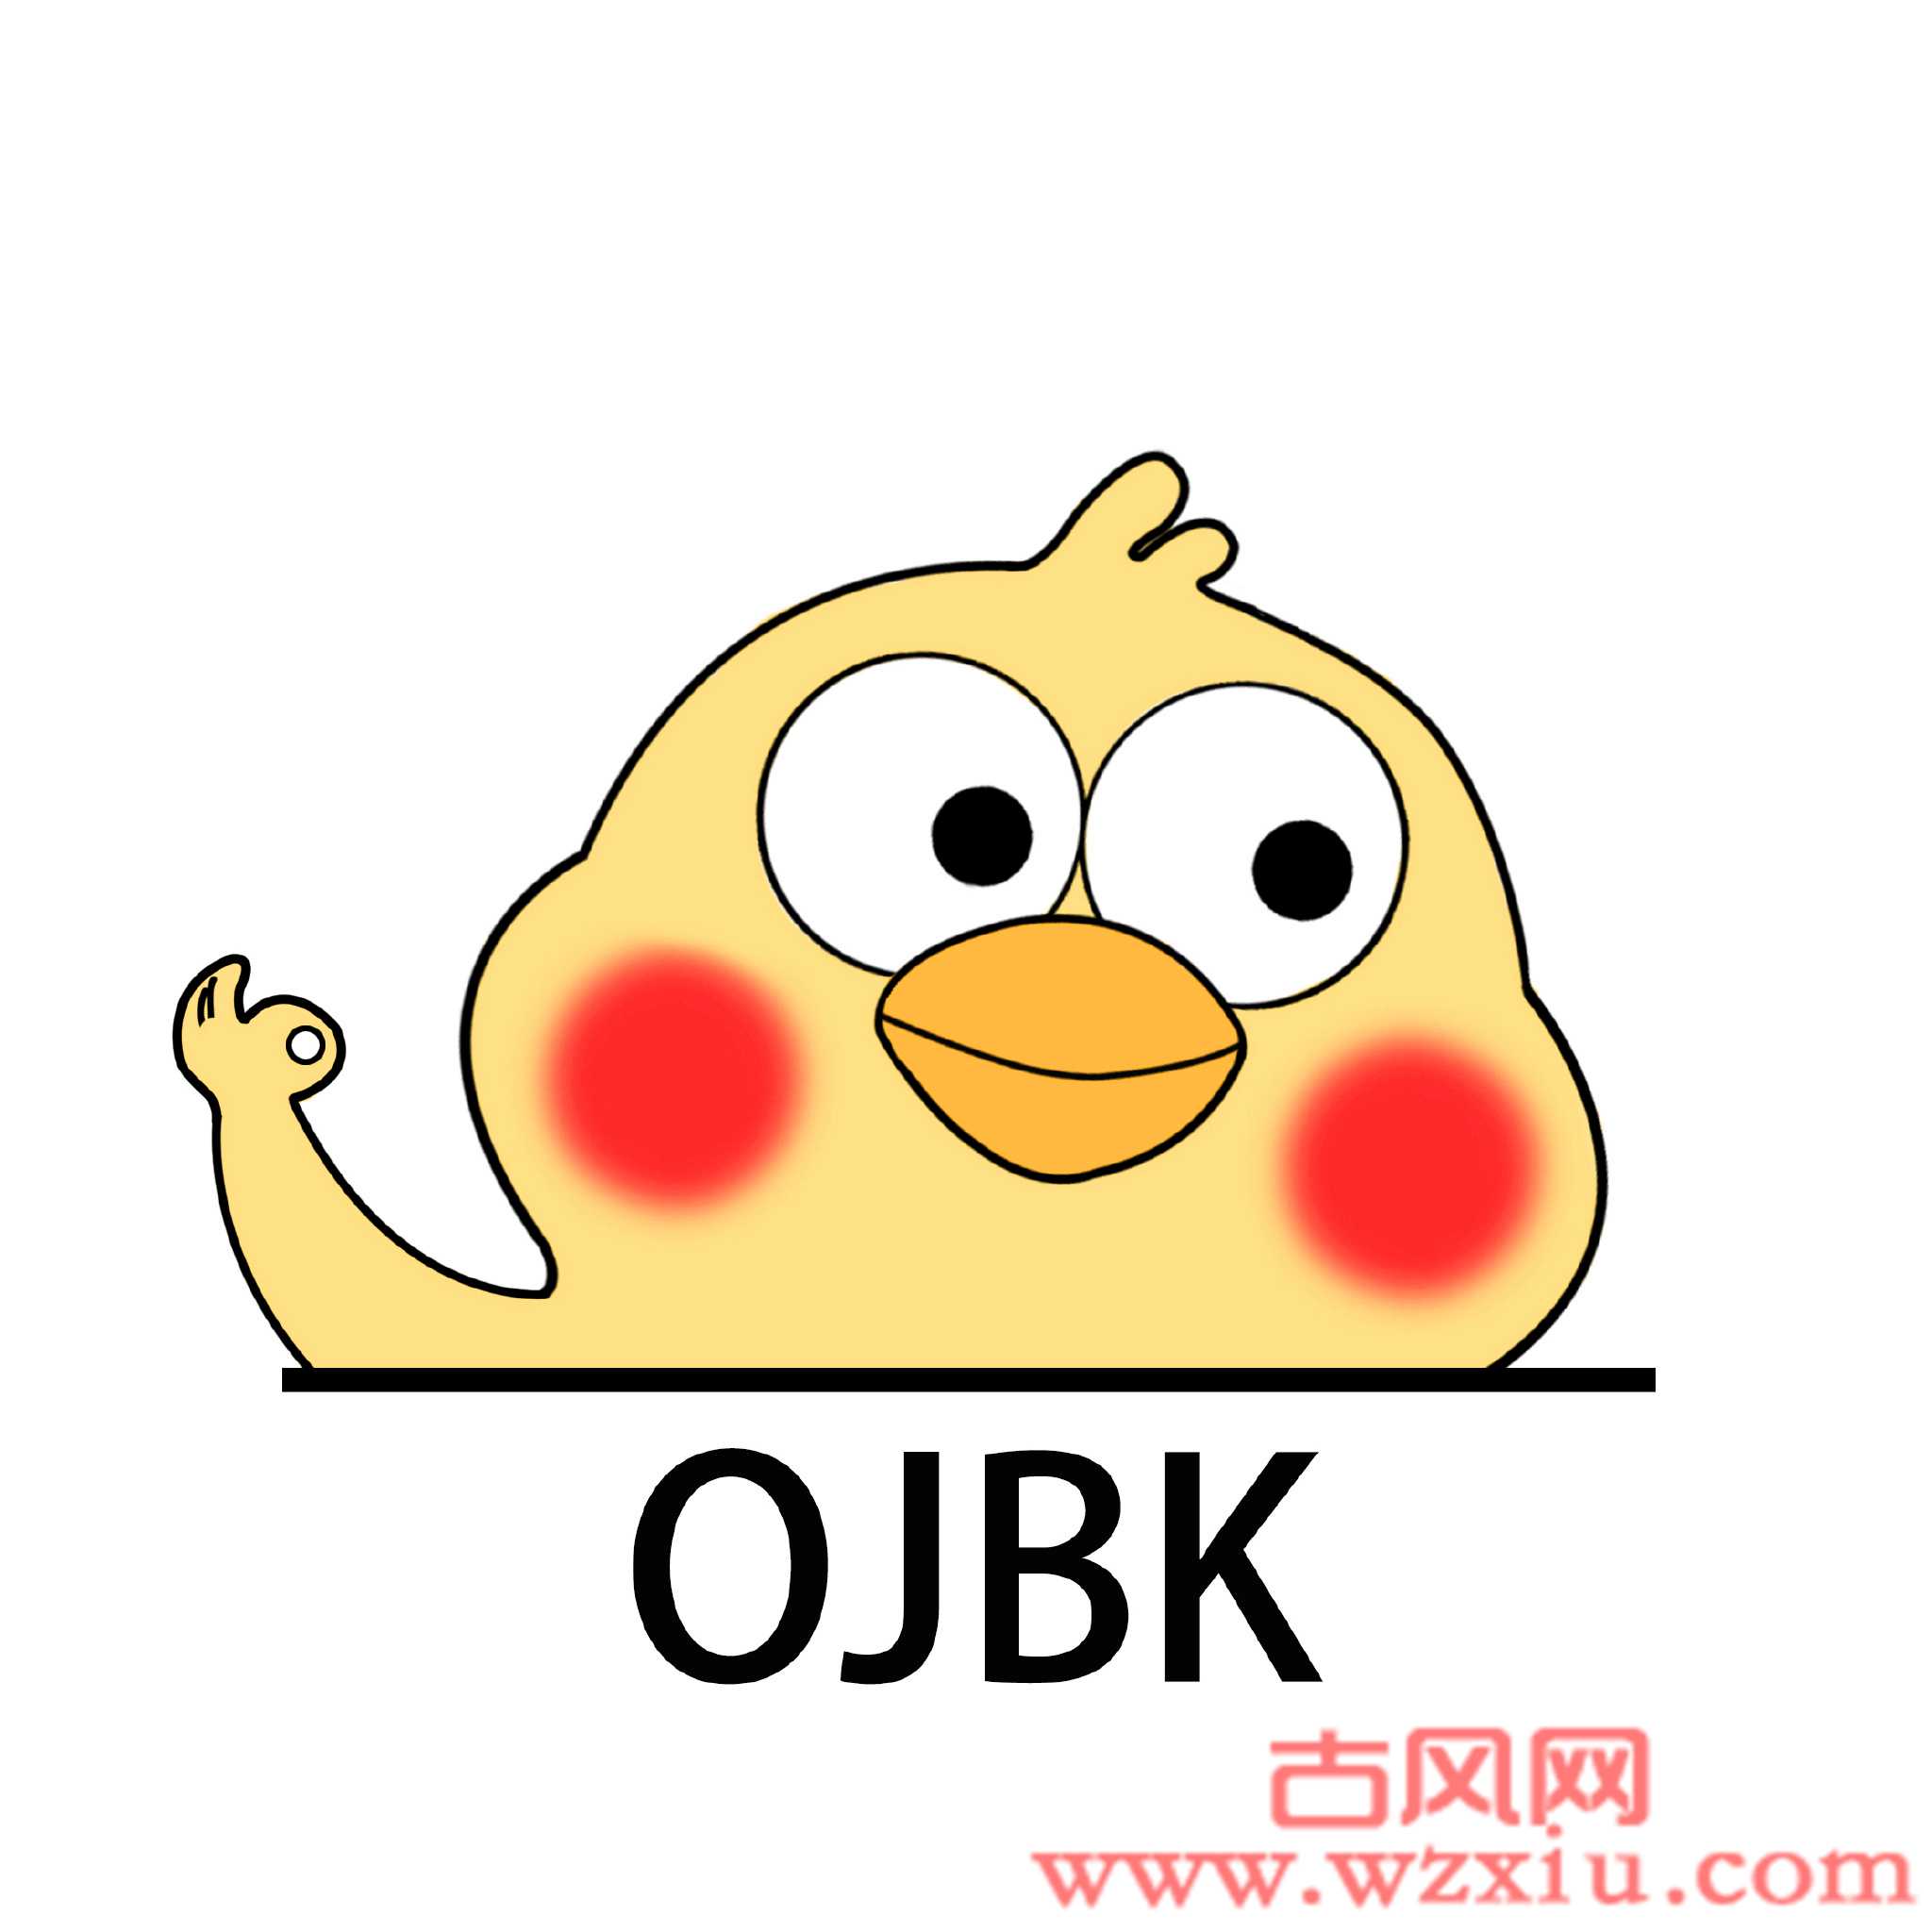 ojbk什么意思网络用语，是骂人的吗